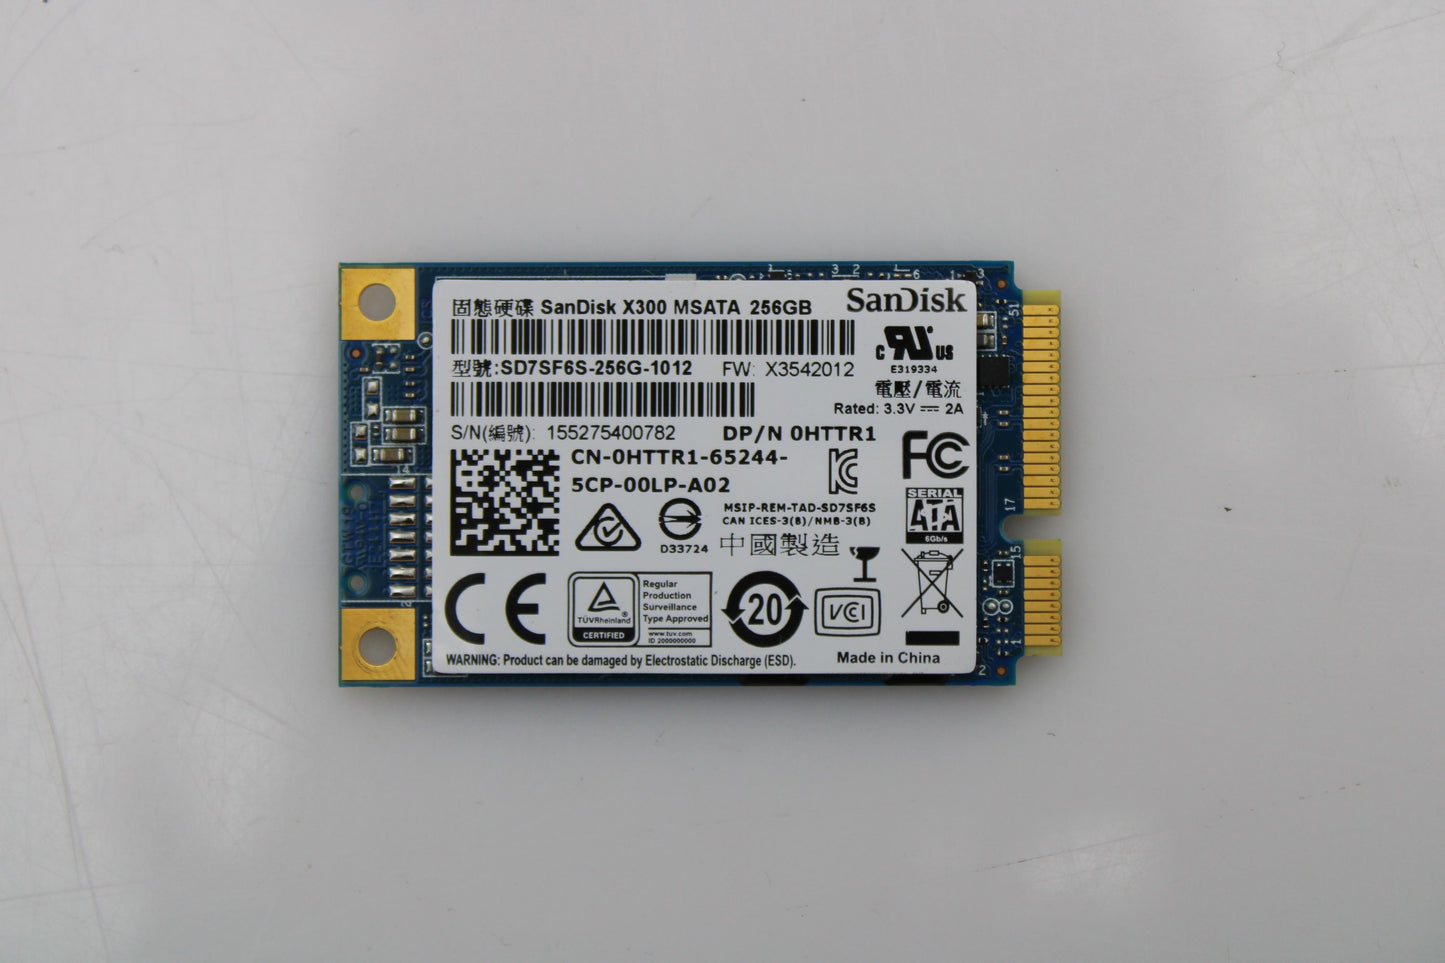 Dell HTTR1 256GB SSD M.2 MSATA 6G, Used